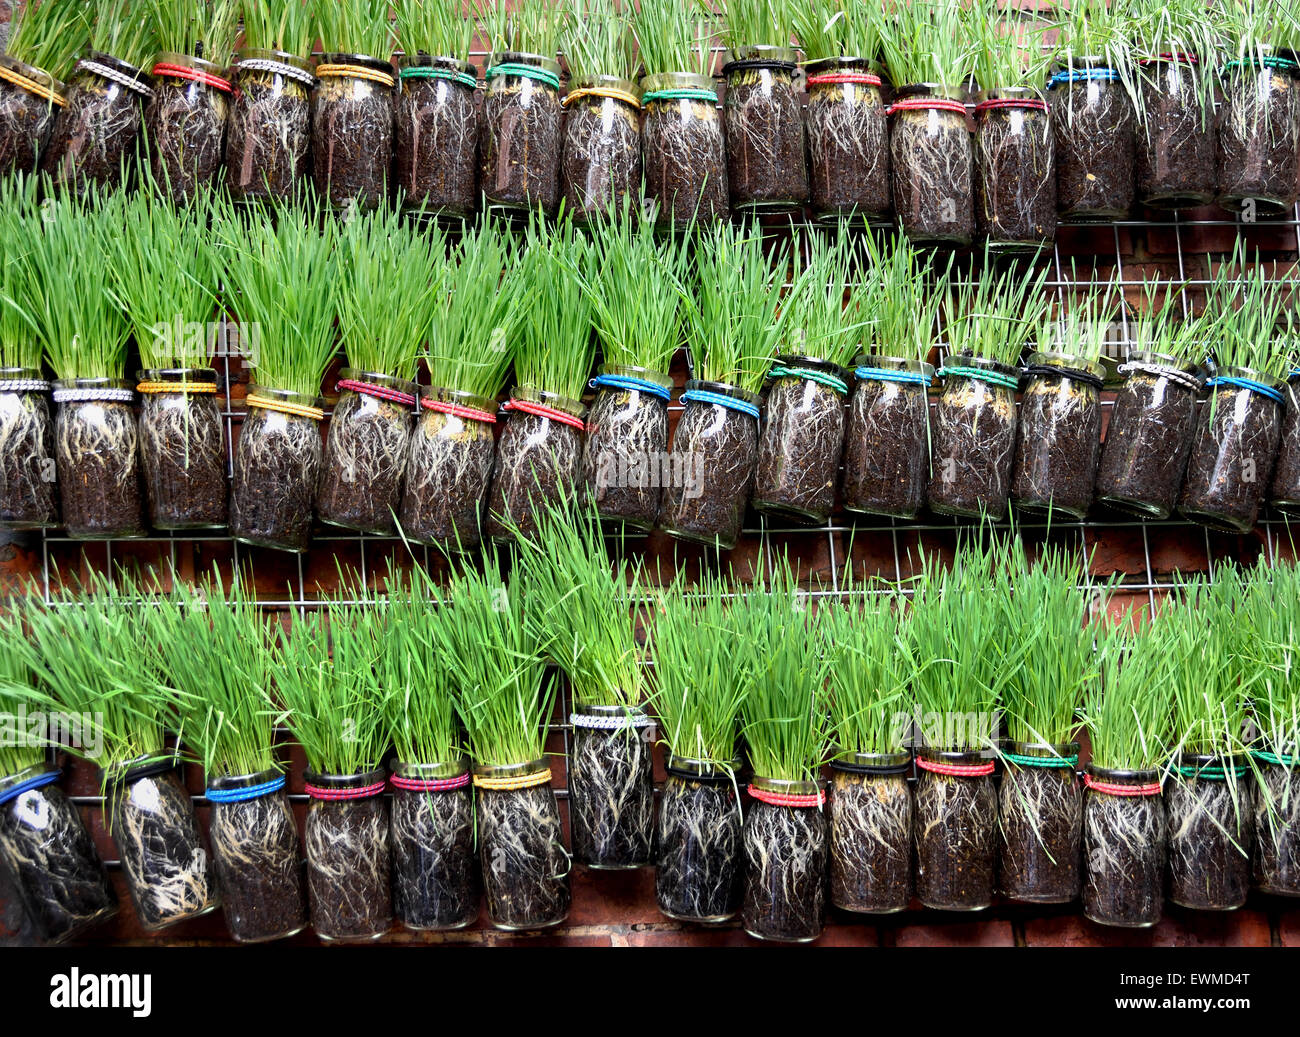 Jardiniers herbes Légumes frais pour la vente du marché alimentaire intérieur chinois Chine Shanghai Banque D'Images